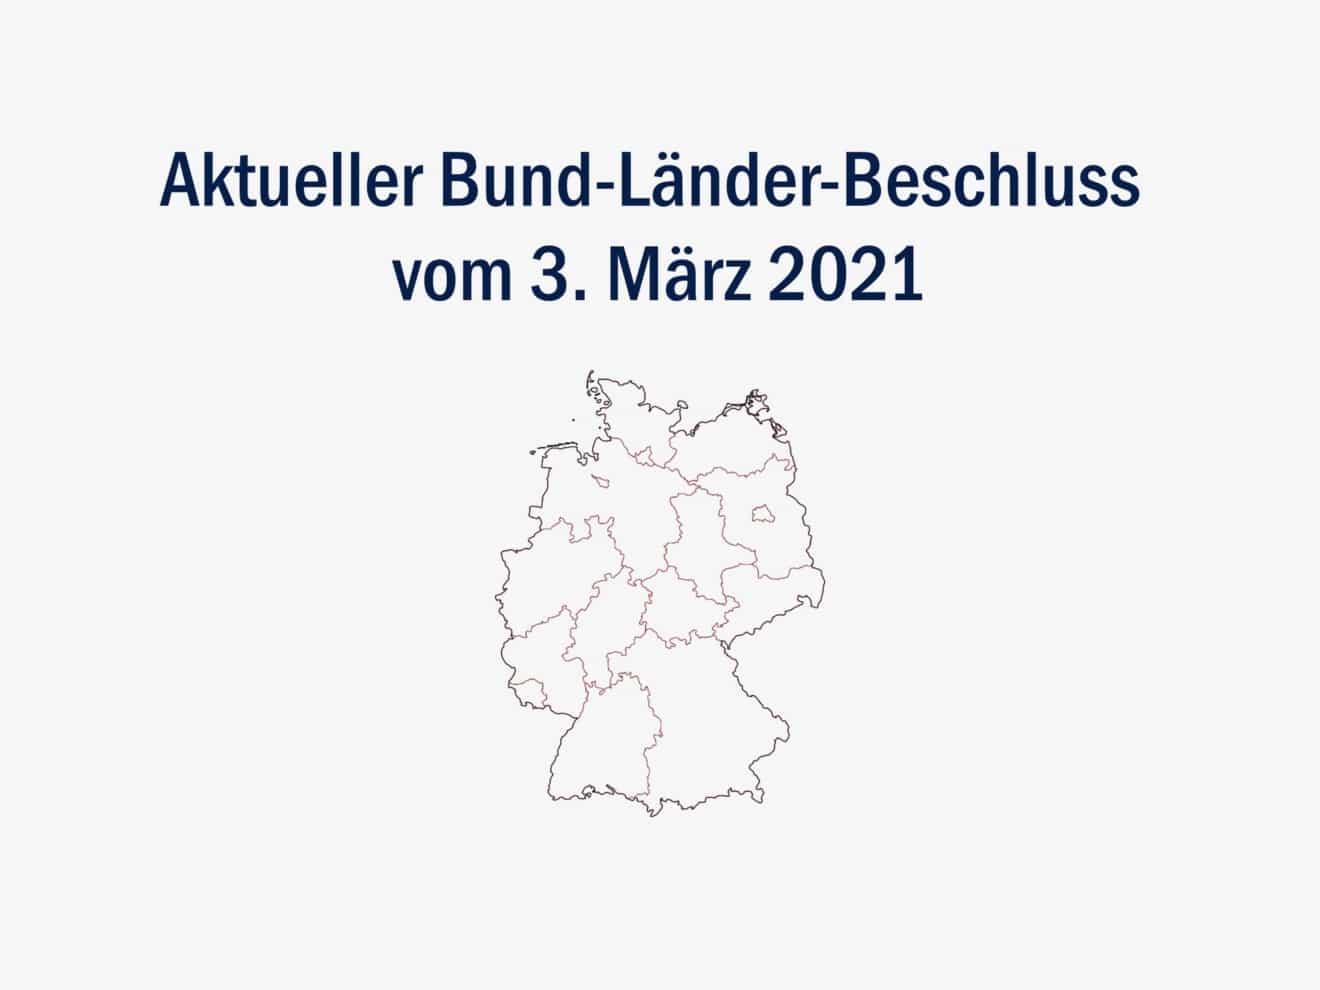 Bund-Länder-Beschluss vom 3. März 2021 - Lockdown bis 28. März 2021 verlängert und Lockerungsschritte geplant